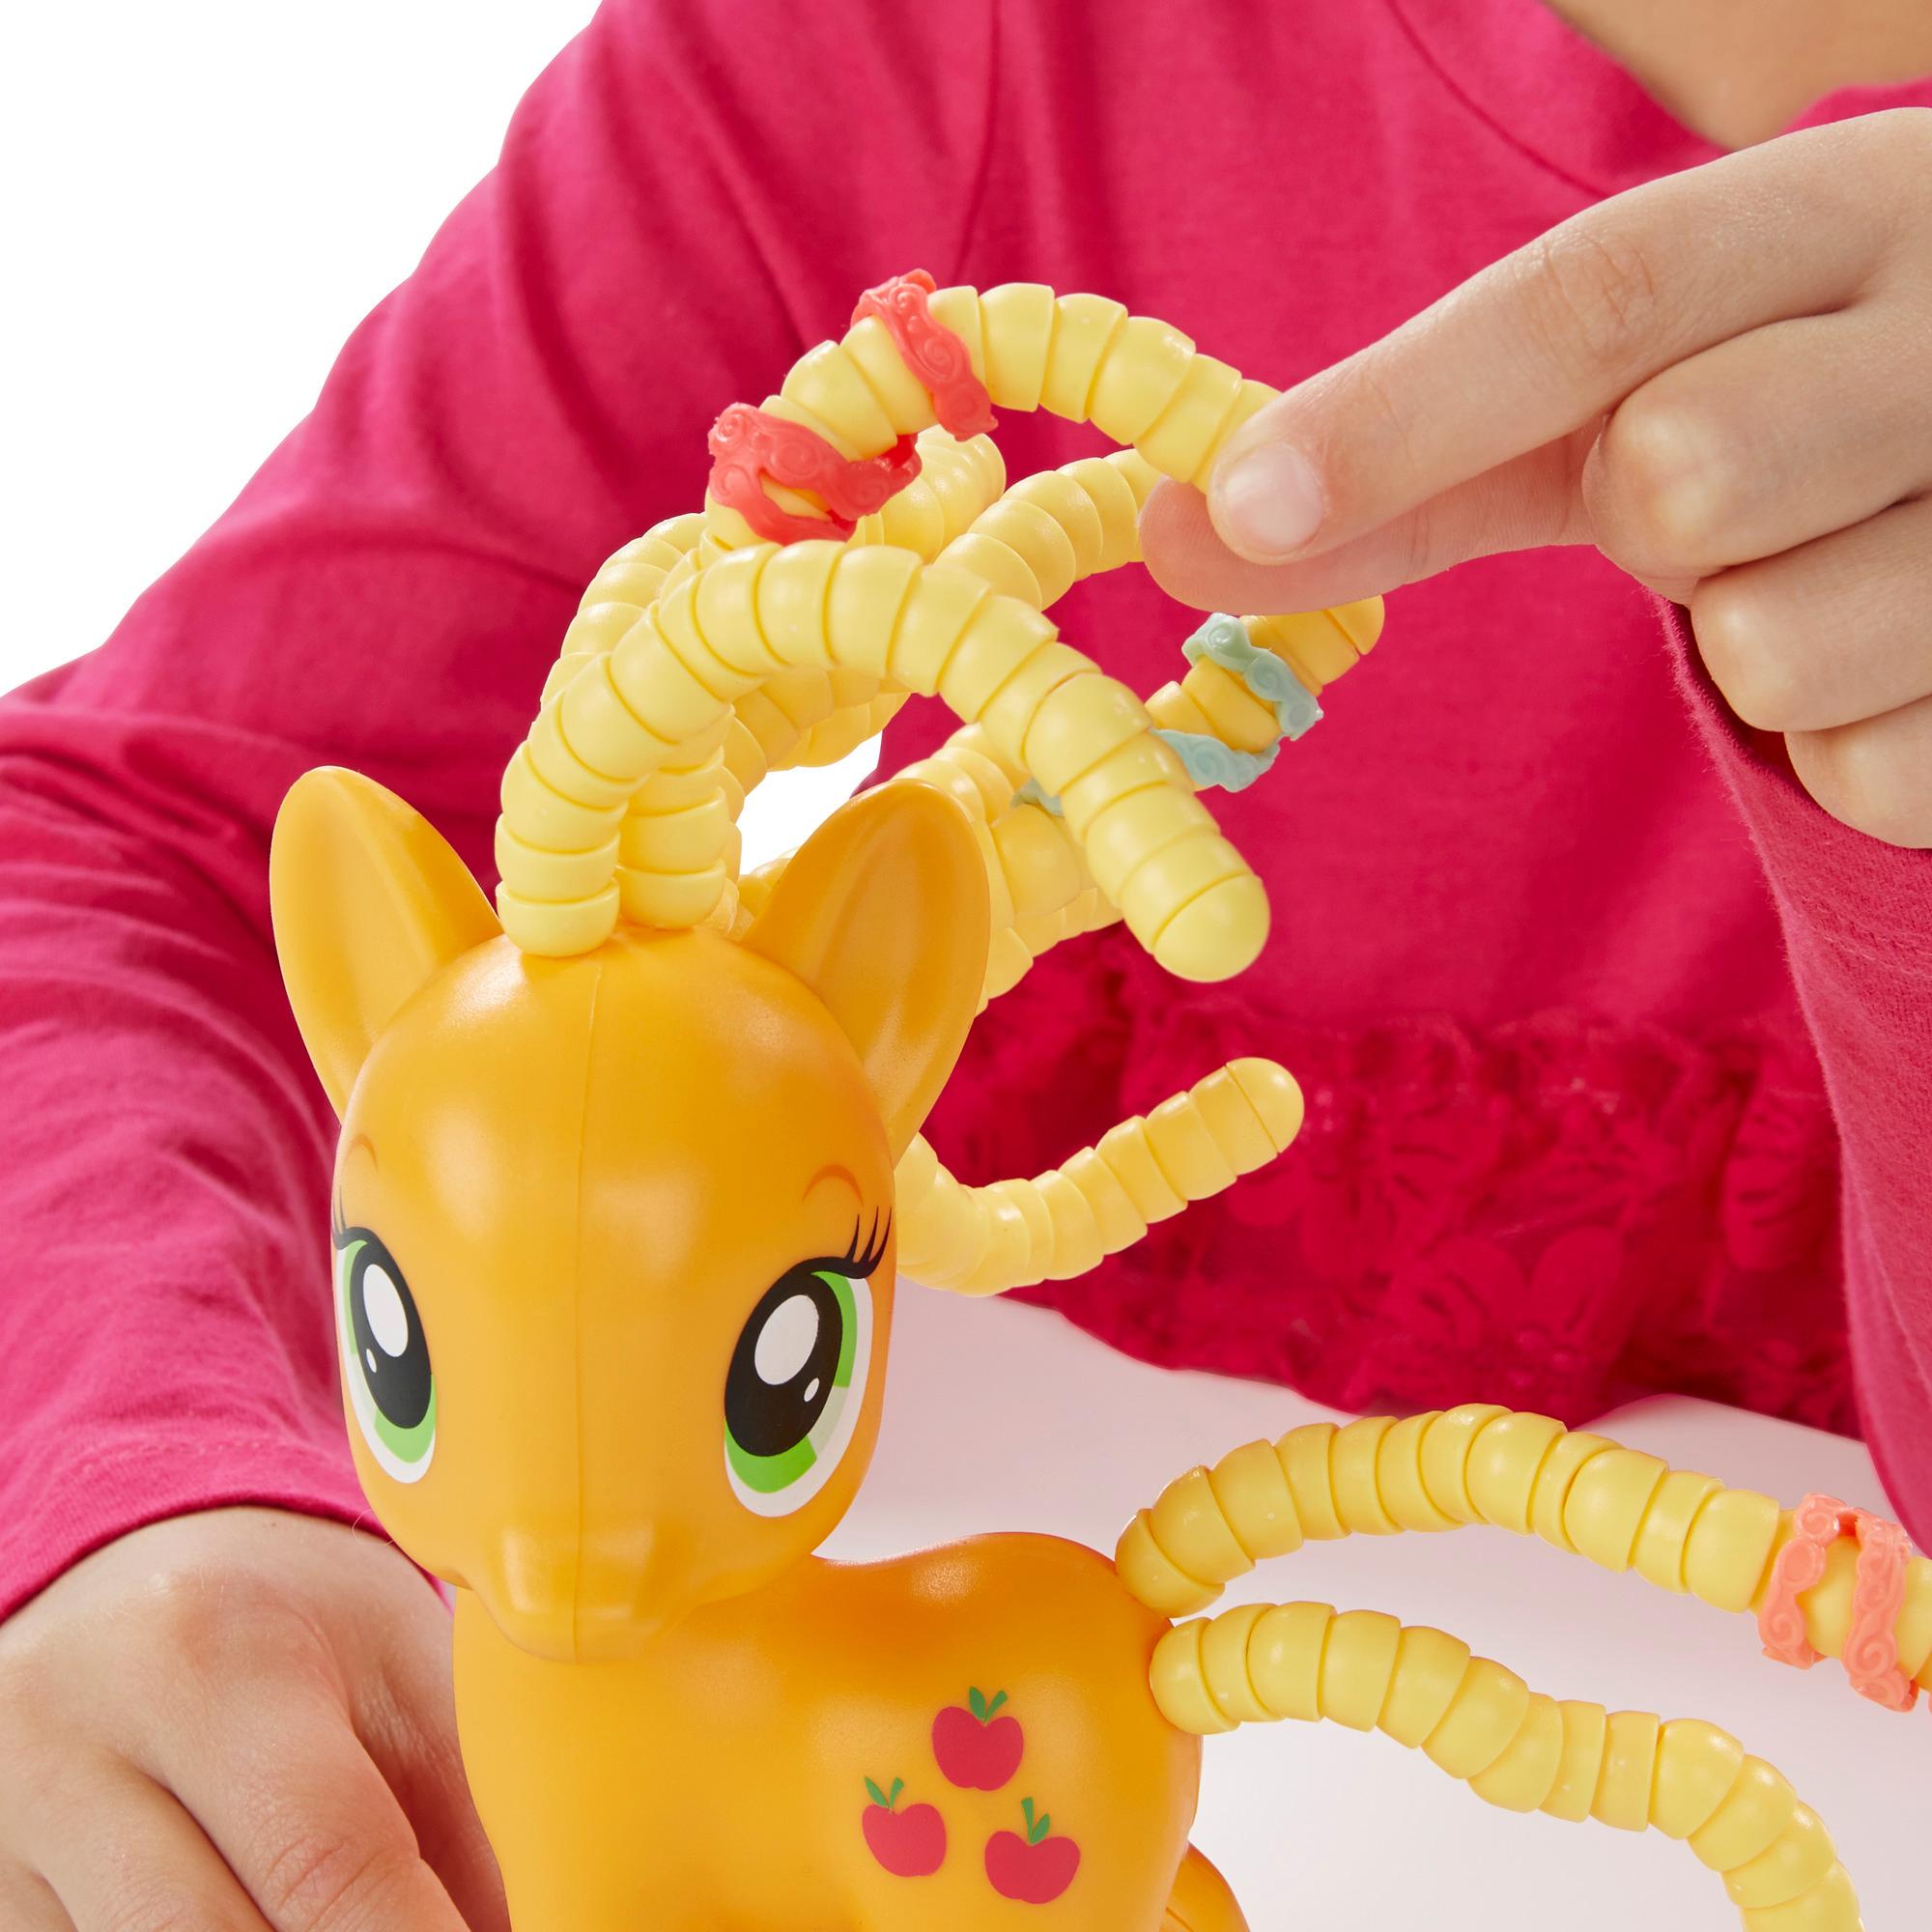 Игровой набор My Little Pony Пони с разными прическами - Эпплджек	  